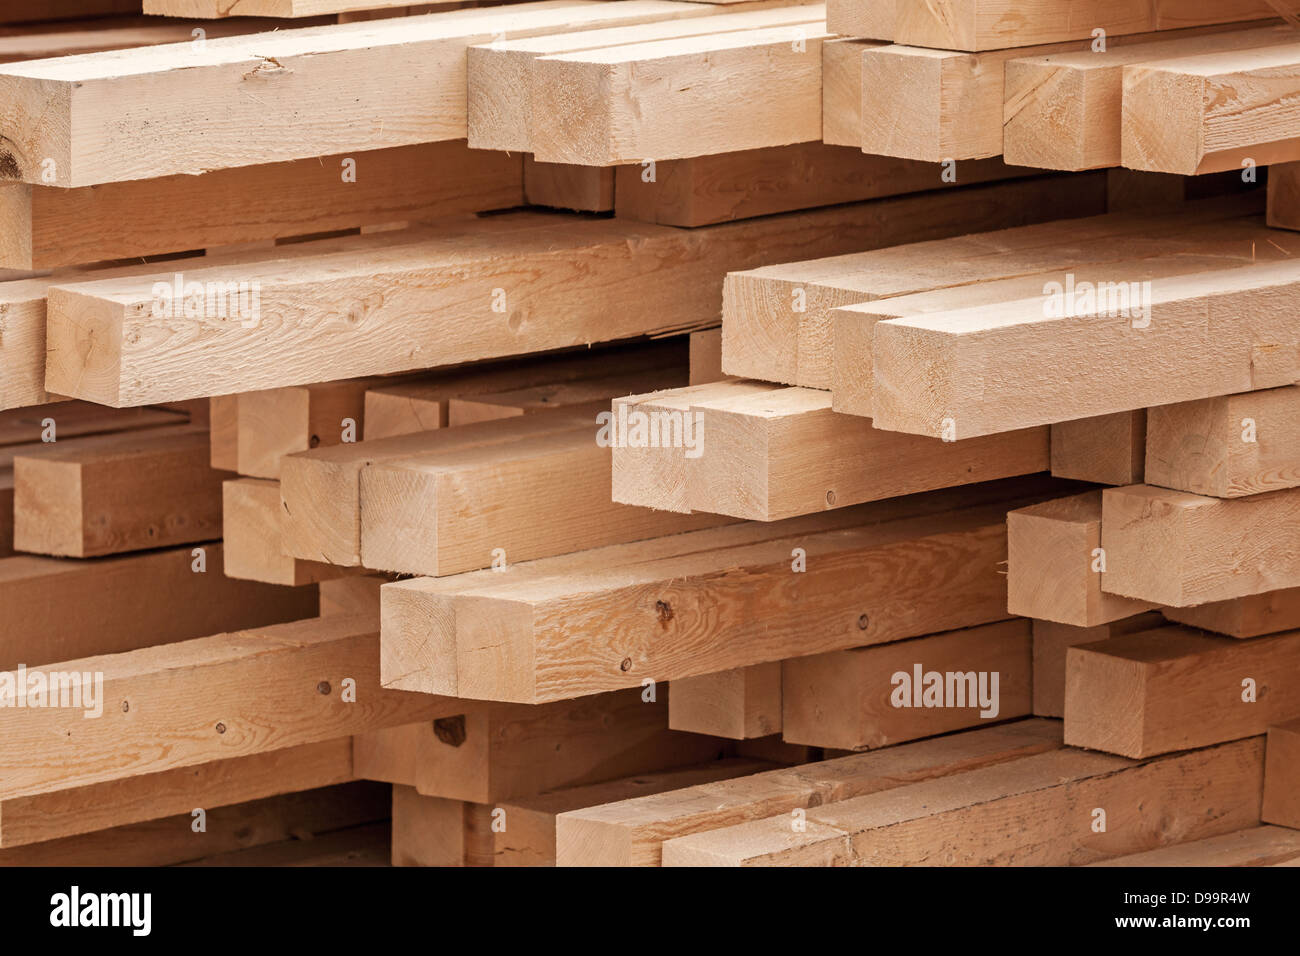 De nouvelles planches de bois sur un volume de stockage. Abstract background Banque D'Images